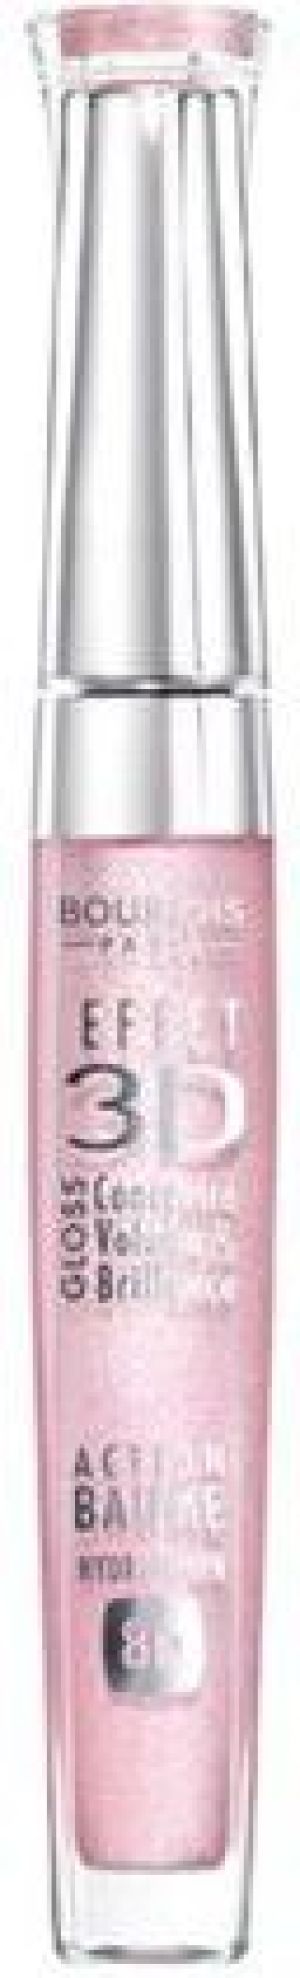 Bourjois Paris Effet 3D Gloss błyszczyk do ust 29 Rose Charismatic 5,7ml 1